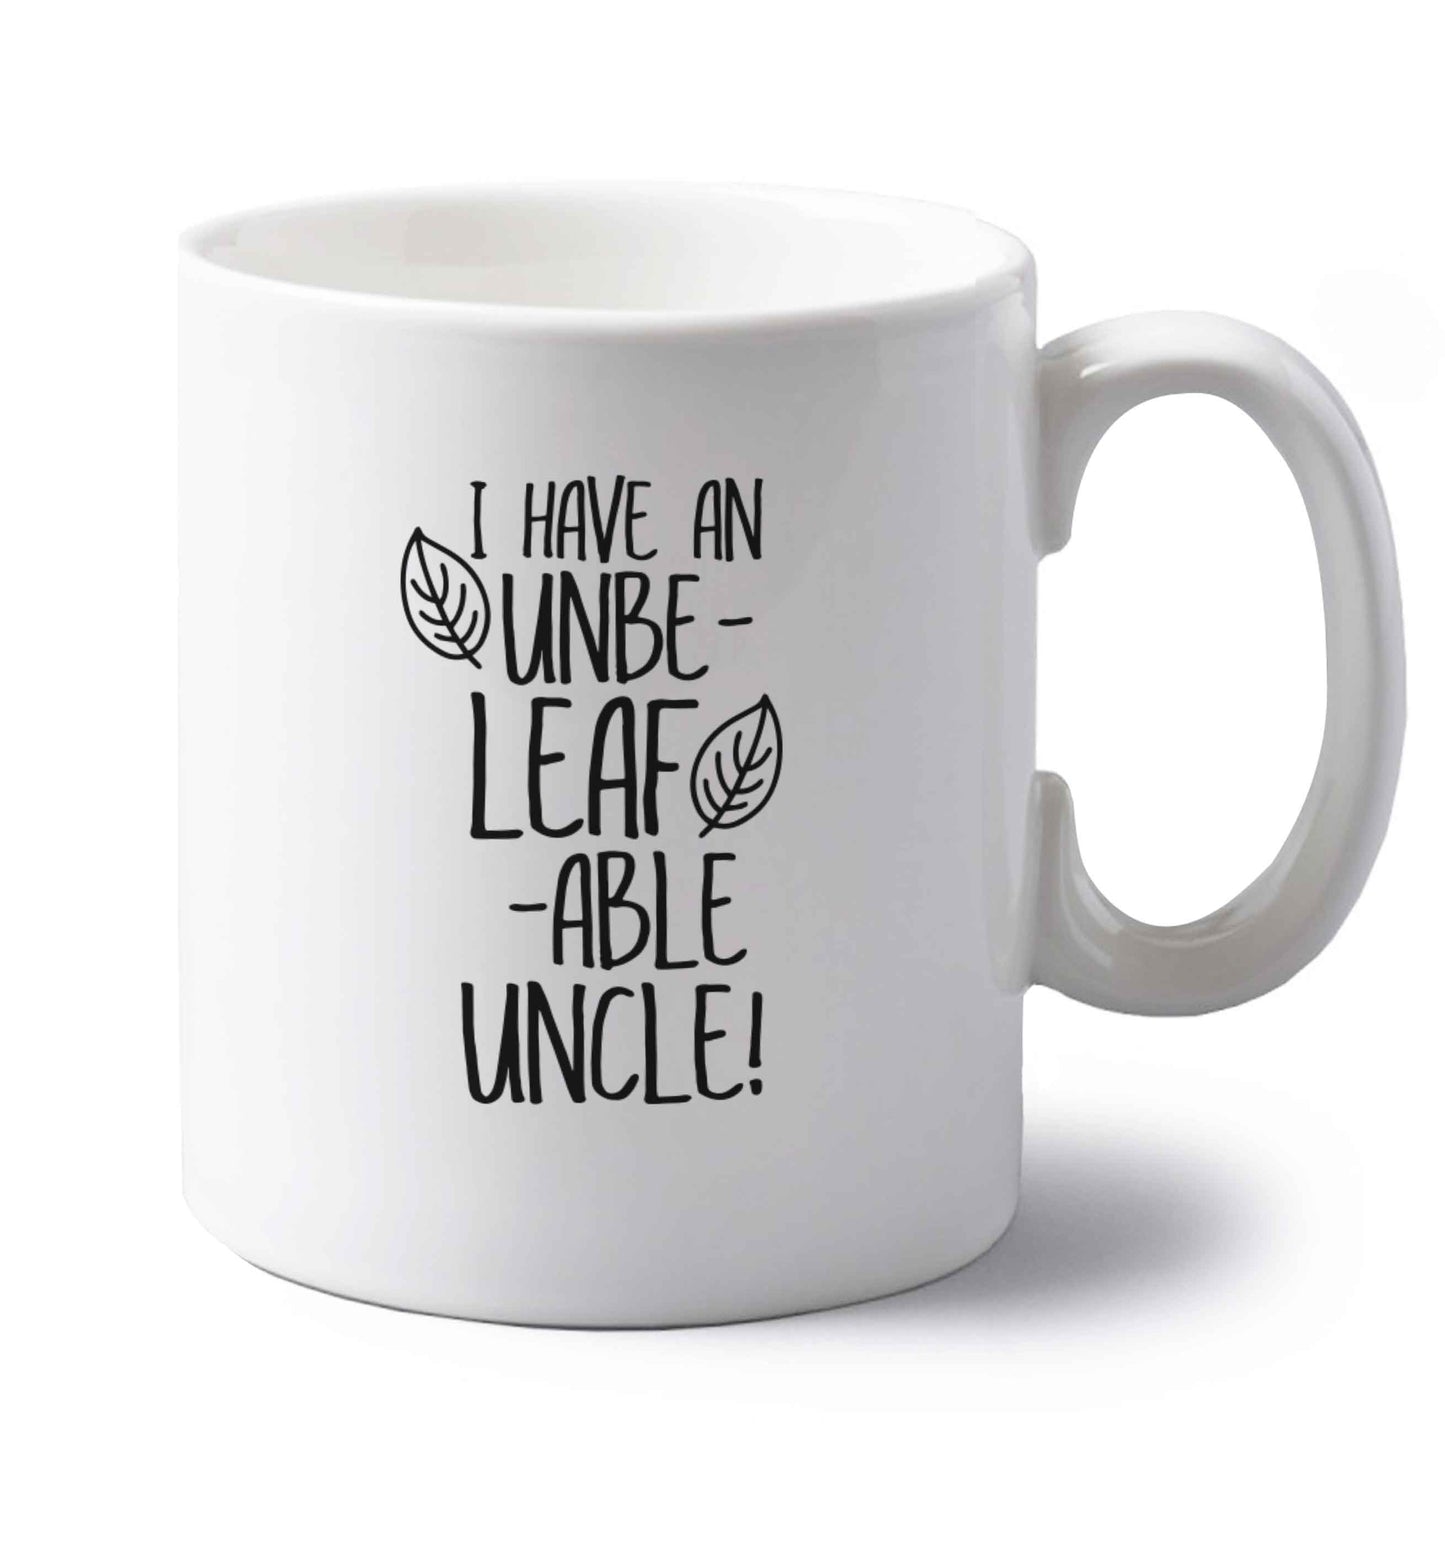 I have an unbe-leaf-able uncle left handed white ceramic mug 